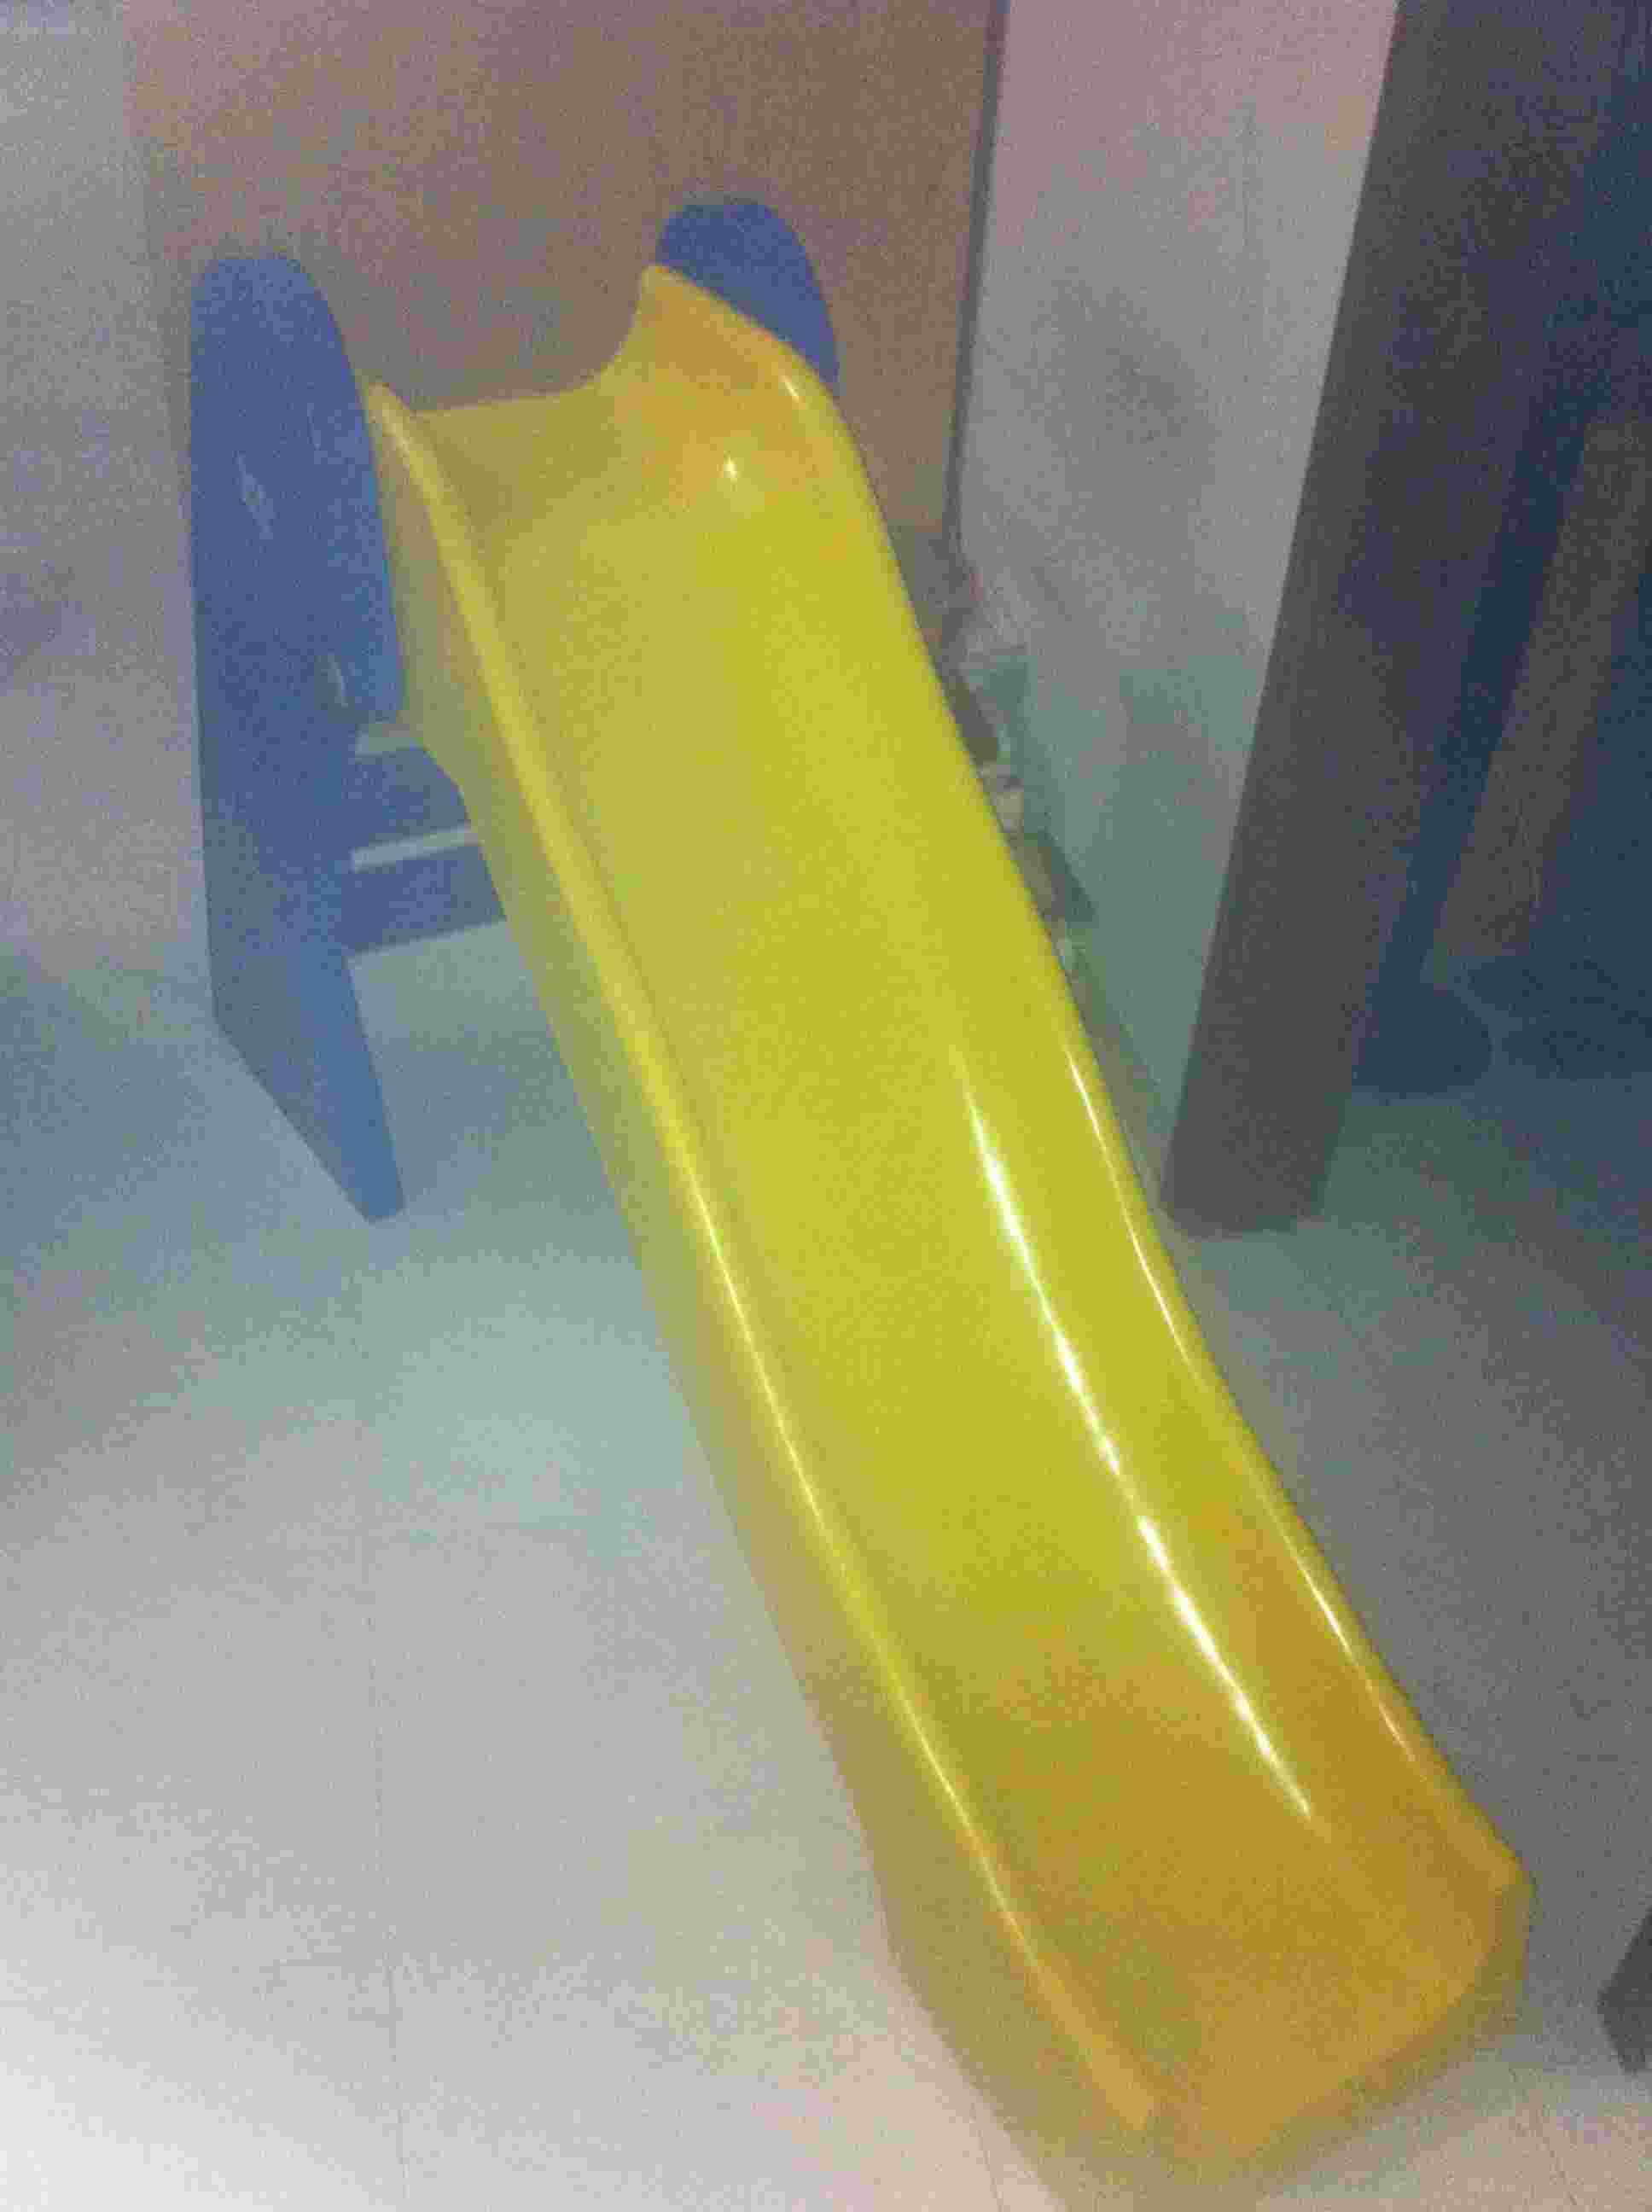 Slide for children large image 0